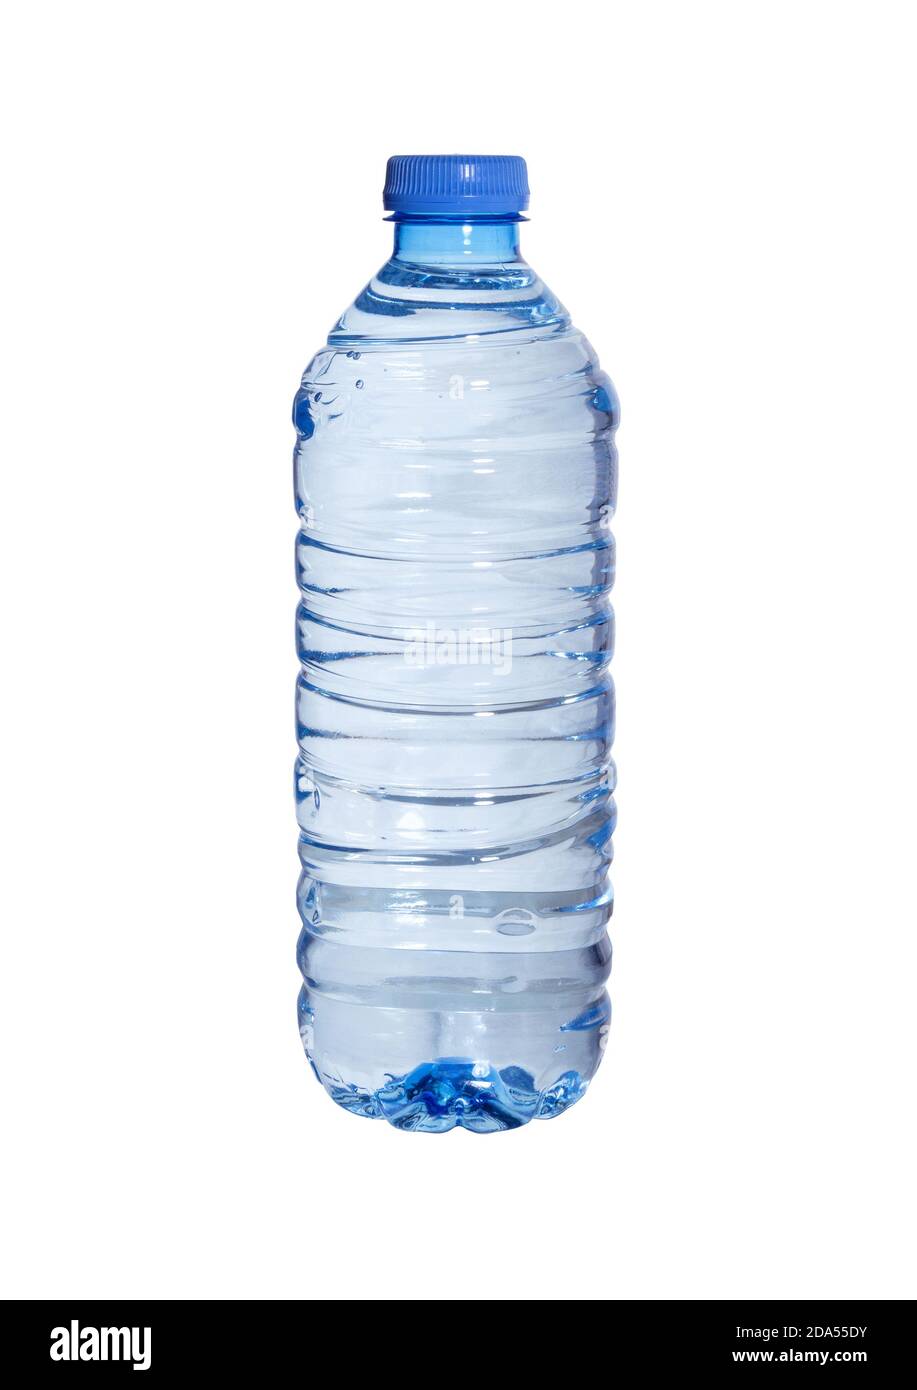 https://c8.alamy.com/compes/2da55dy/botellas-de-agua-aisladas-sobre-fondo-blanco-botella-de-pet-de-plastico-transparente-de-agua-mineral-2da55dy.jpg